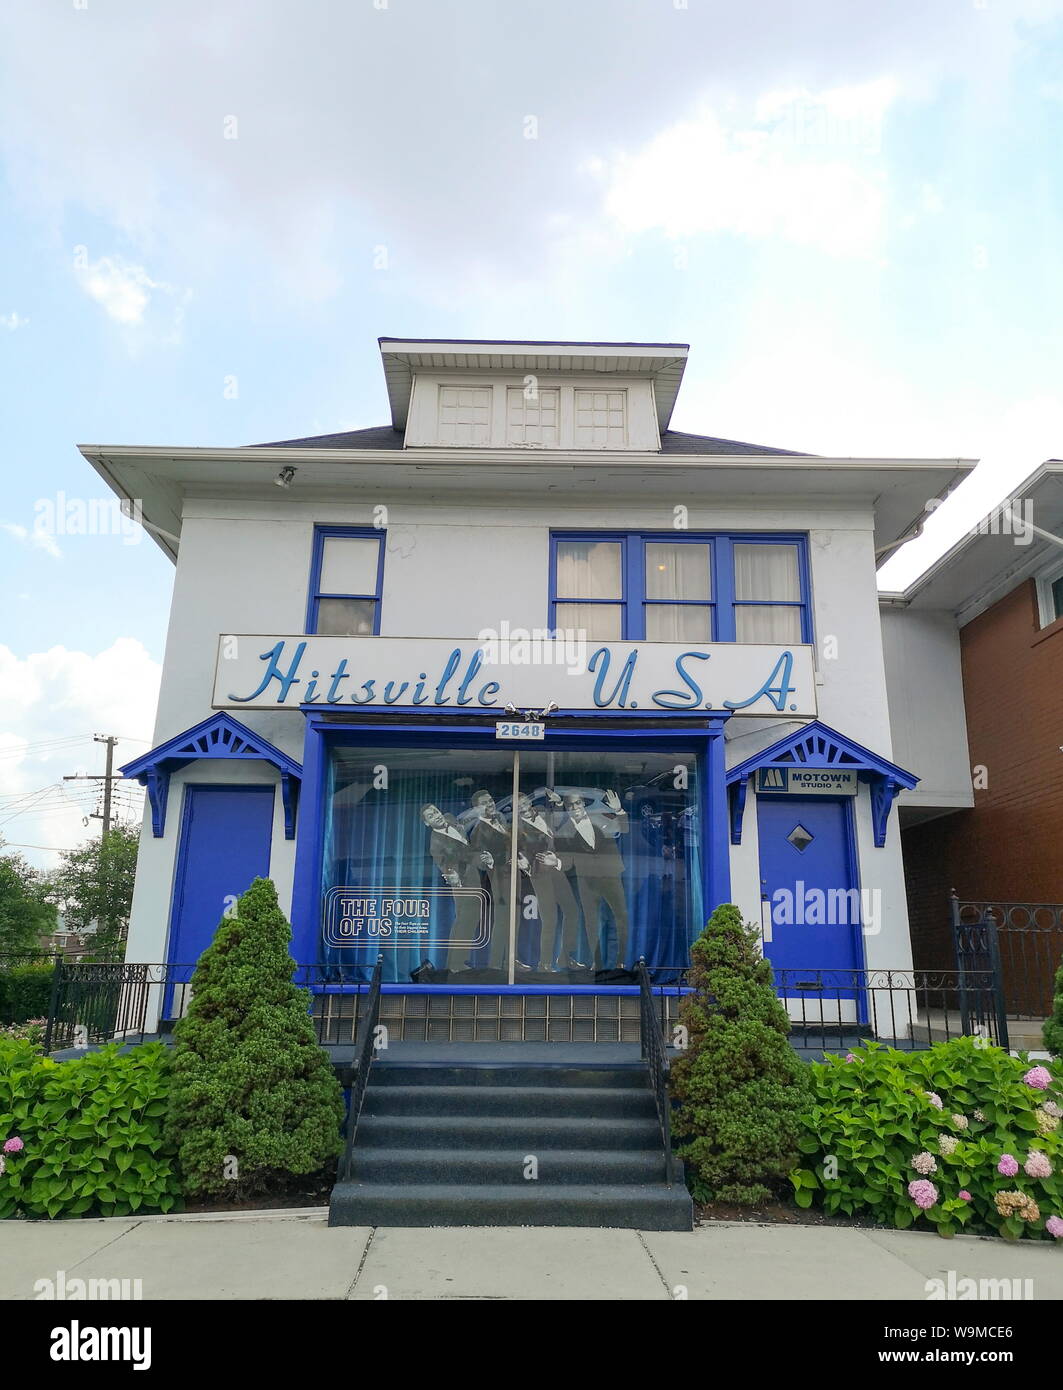 HITSVILLE U.S.A, Museo de la Motown de Detroit Foto de stock